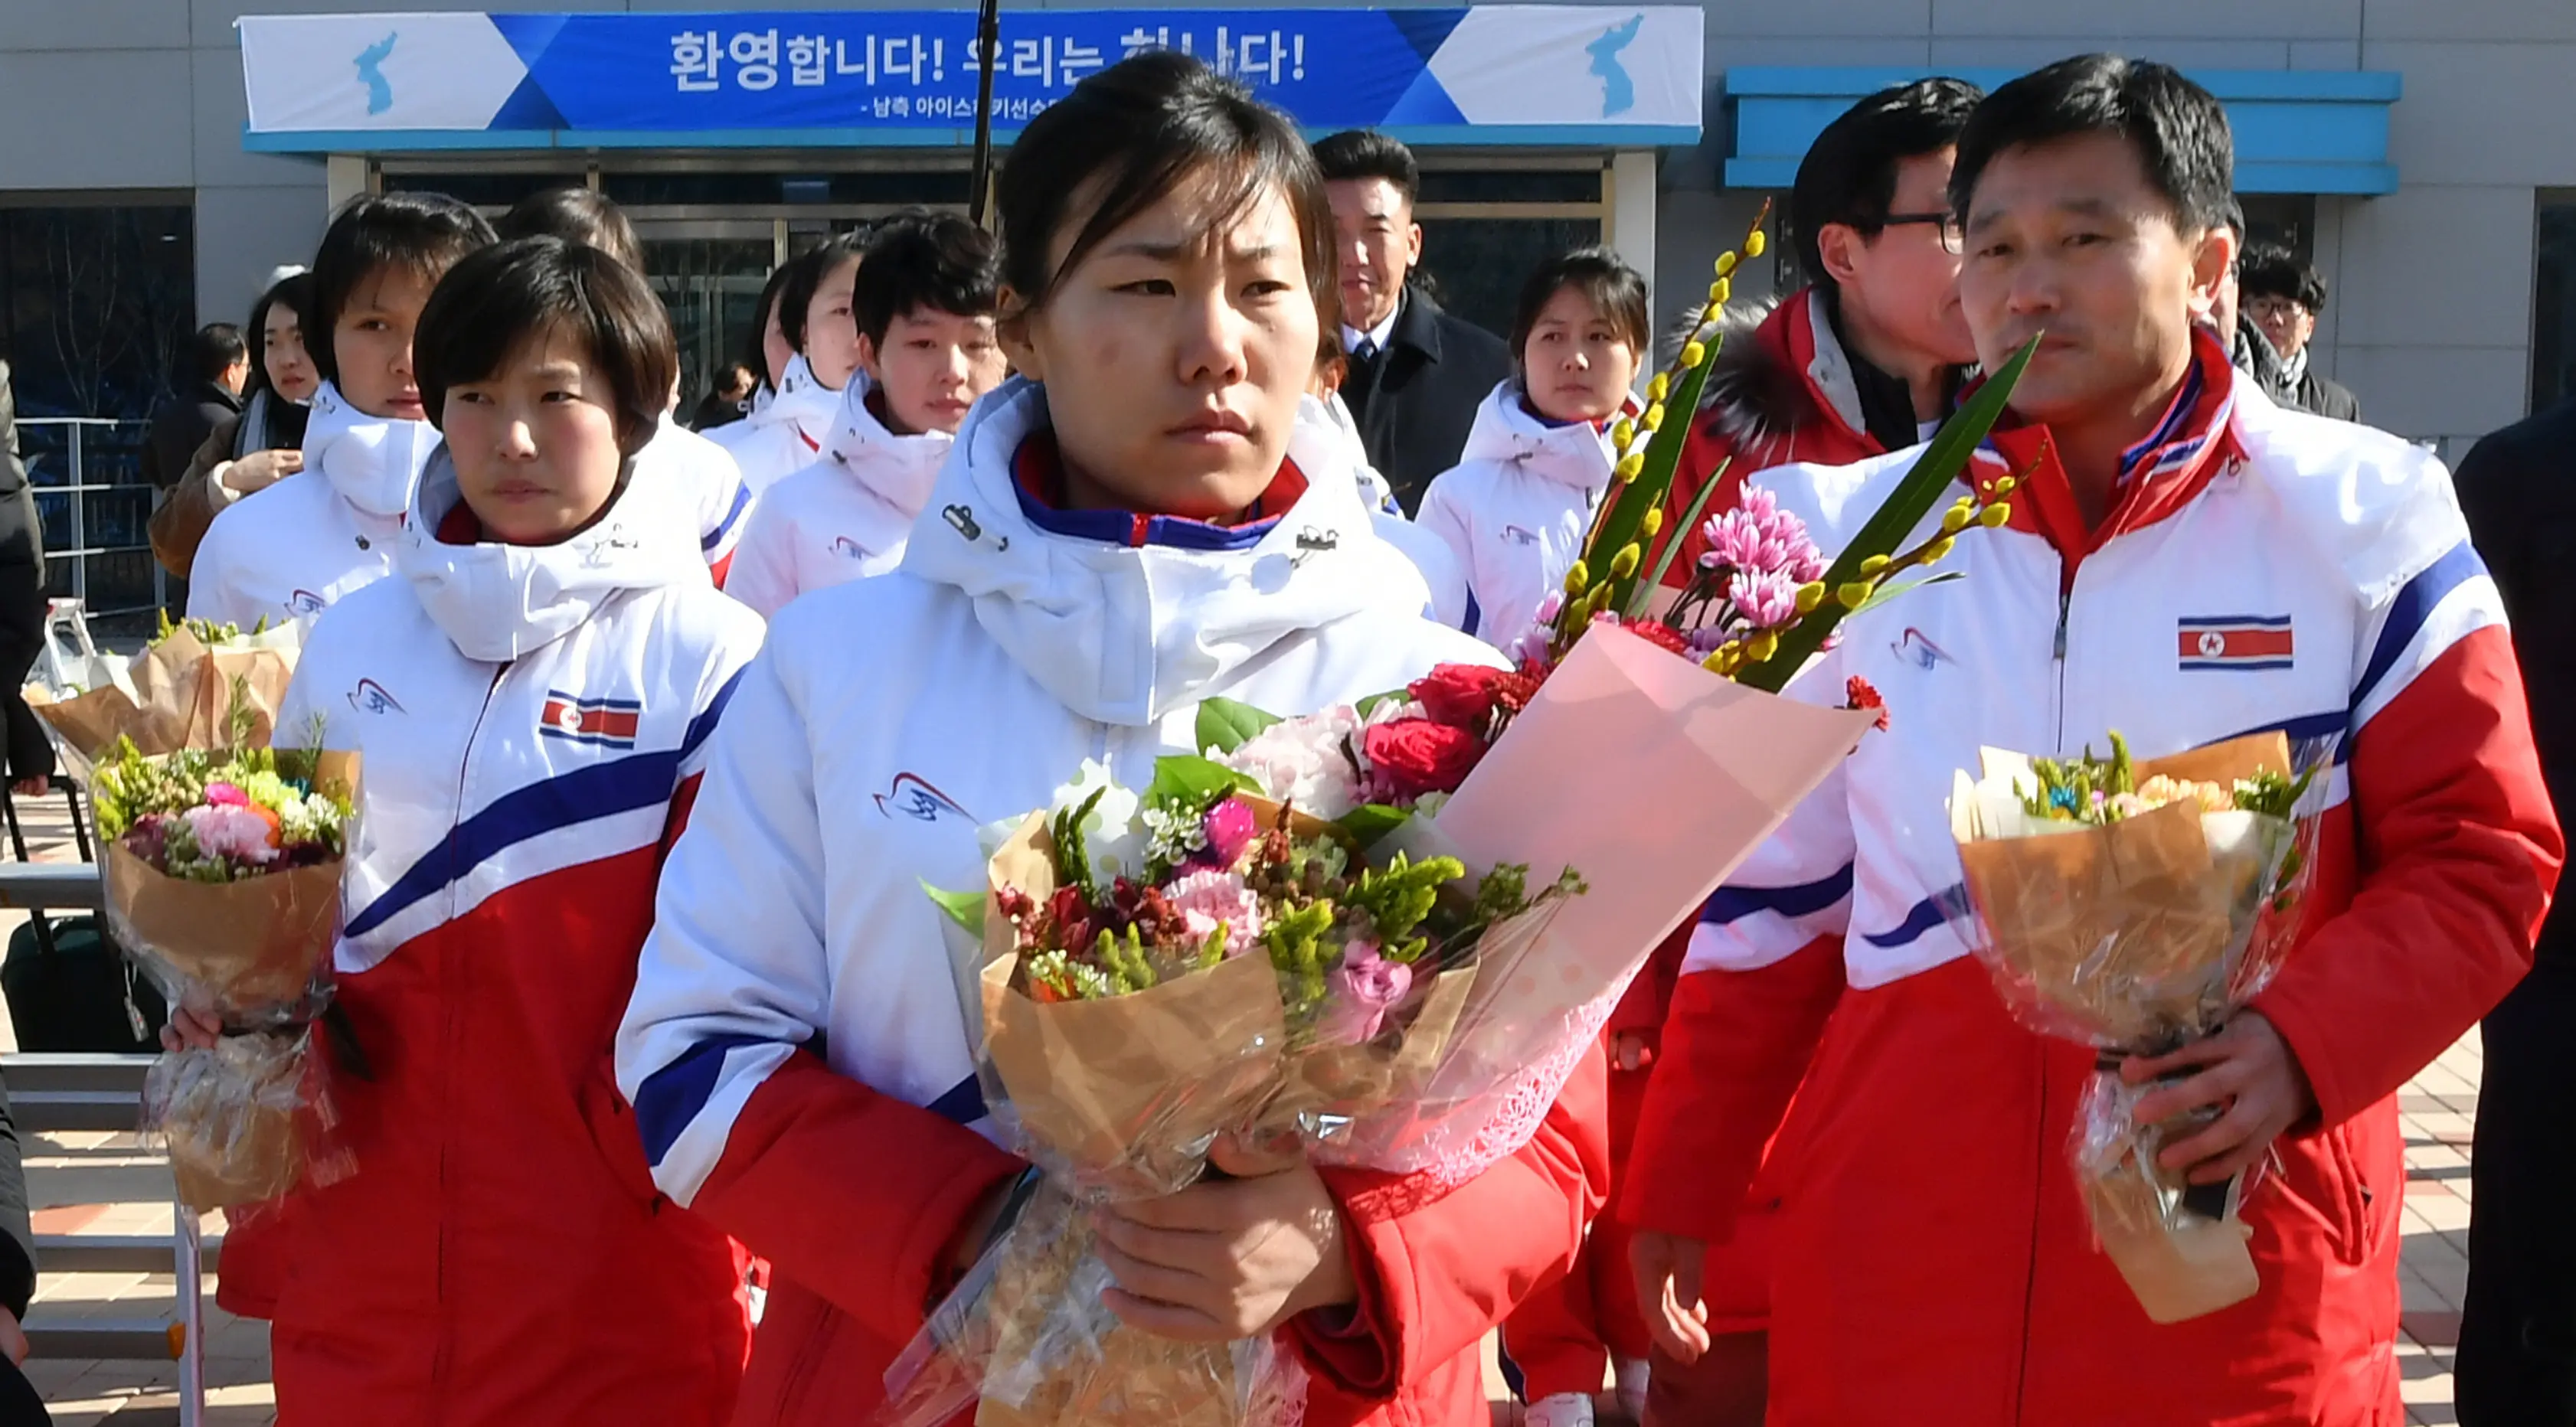 Anggota tim hoki es Korea Utara memegang bunga saat tiba di pusat pelatihan nasional Jincheon, Korsel (25/1). Korea Utara mengirim 12 pemain hoki es untuk mengikuti Olimpiade Musim Dingin PyeongChang di Korea Selatan. (AFP Photo/Pool/ Kyung-Seok)